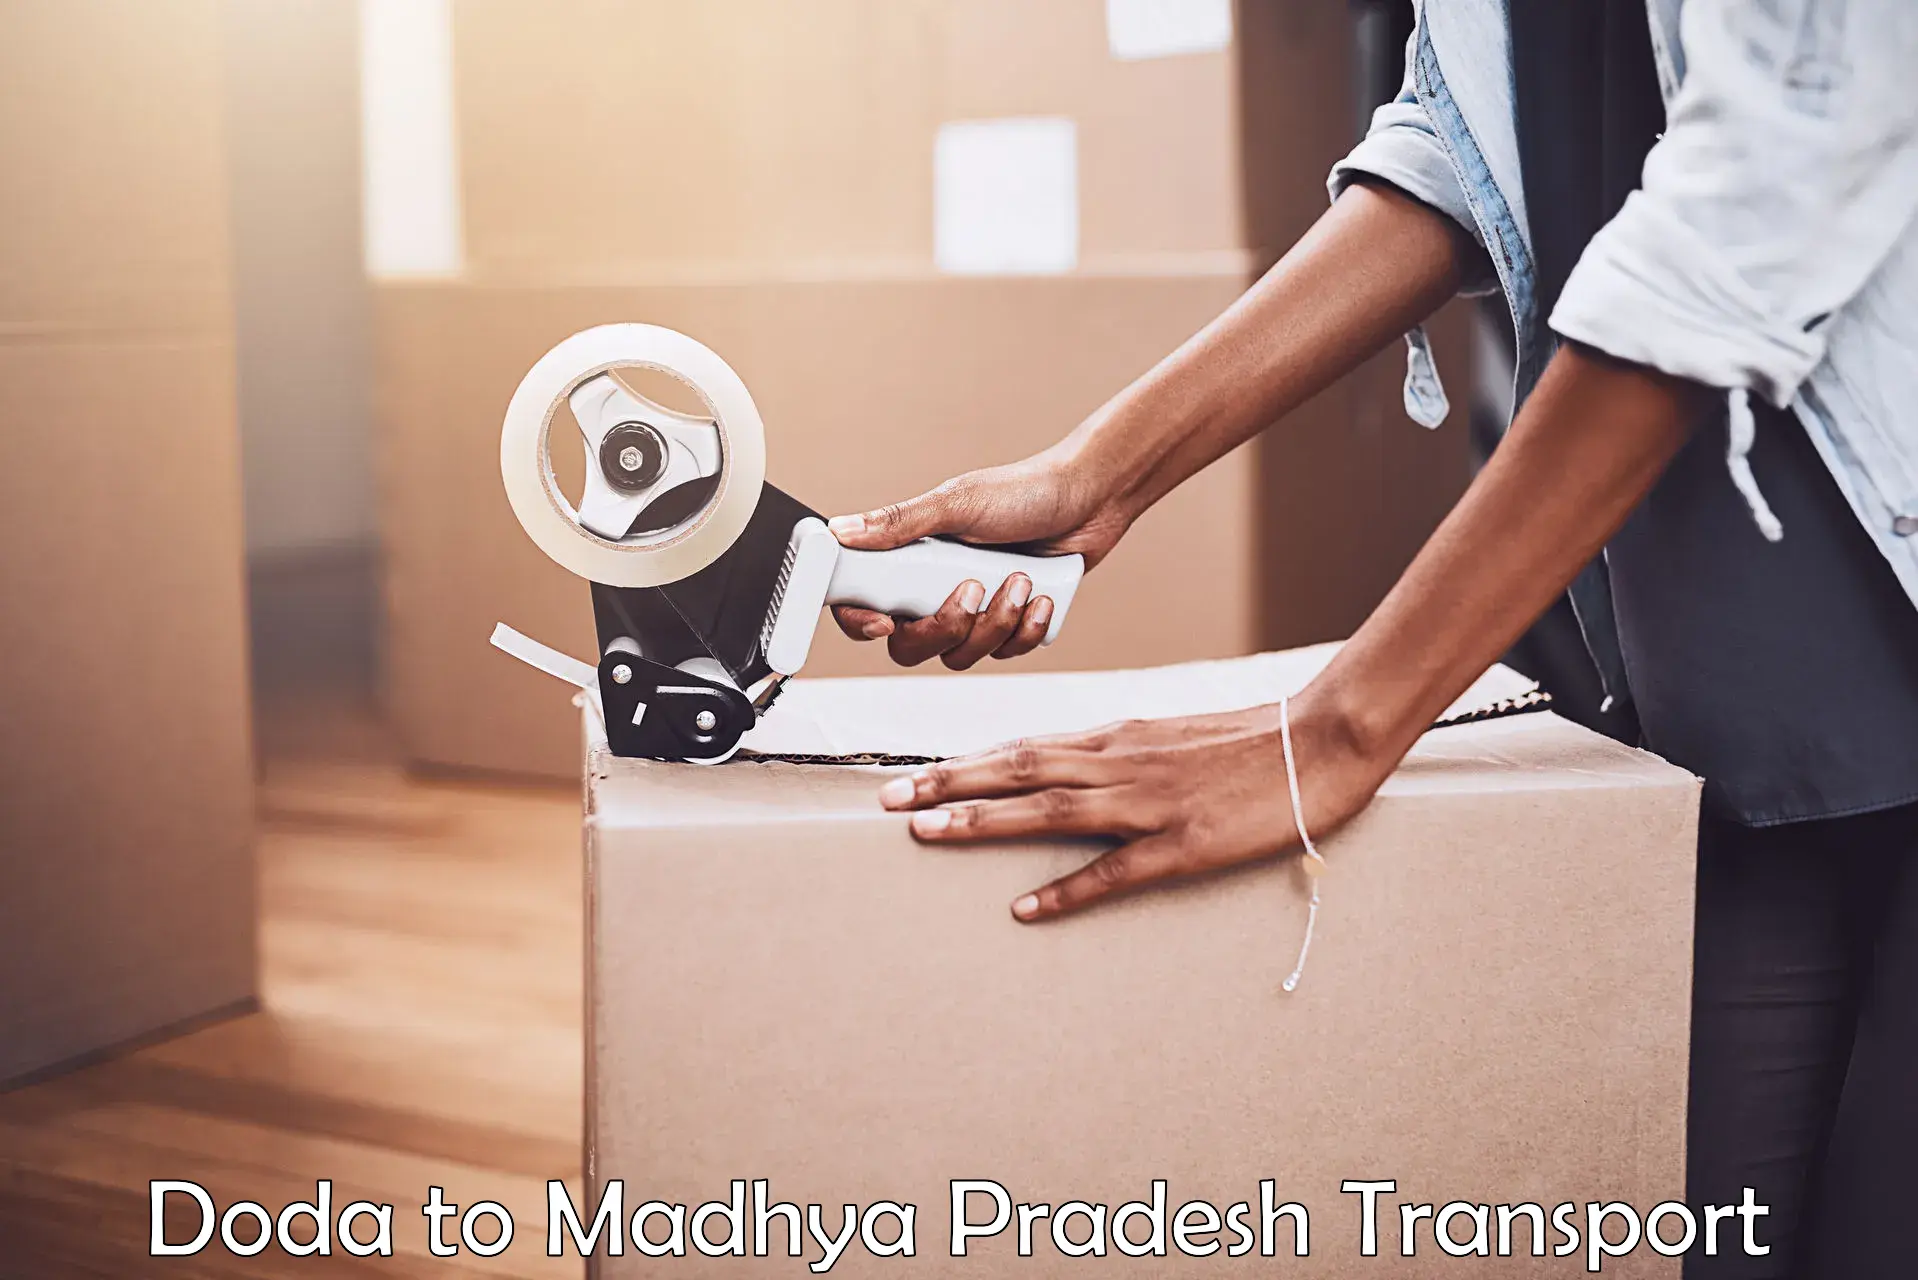 Cargo transport services Doda to Madhya Pradesh